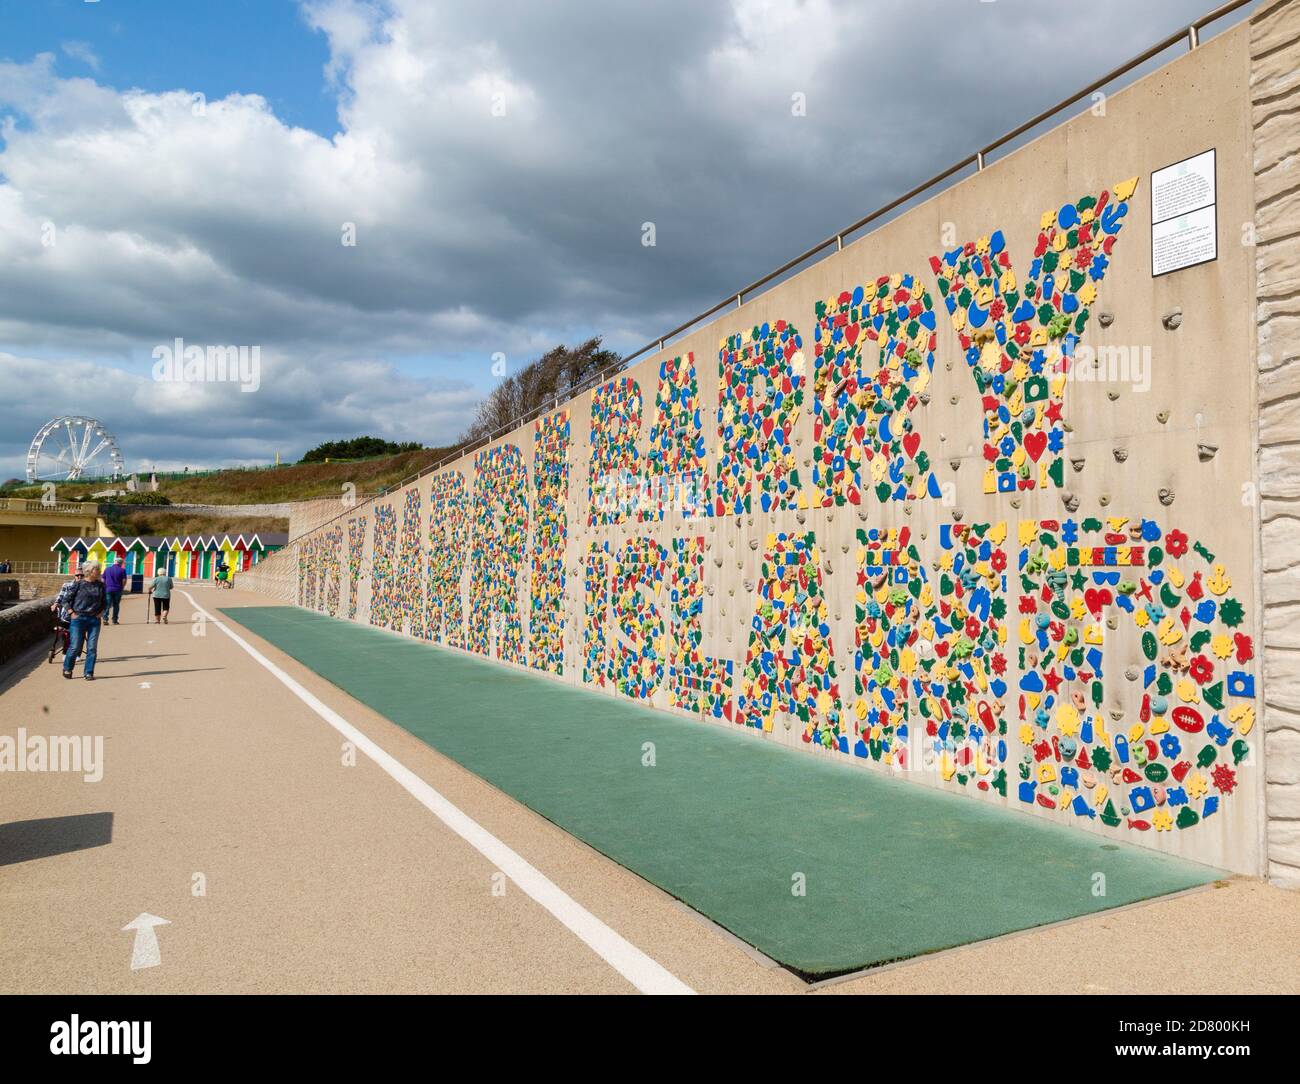 Mur d'escalade décrivant l'île Barry dans des mains et des pieds colorés, Barry Island, Glamourgan, pays de Galles du Sud. Banque D'Images